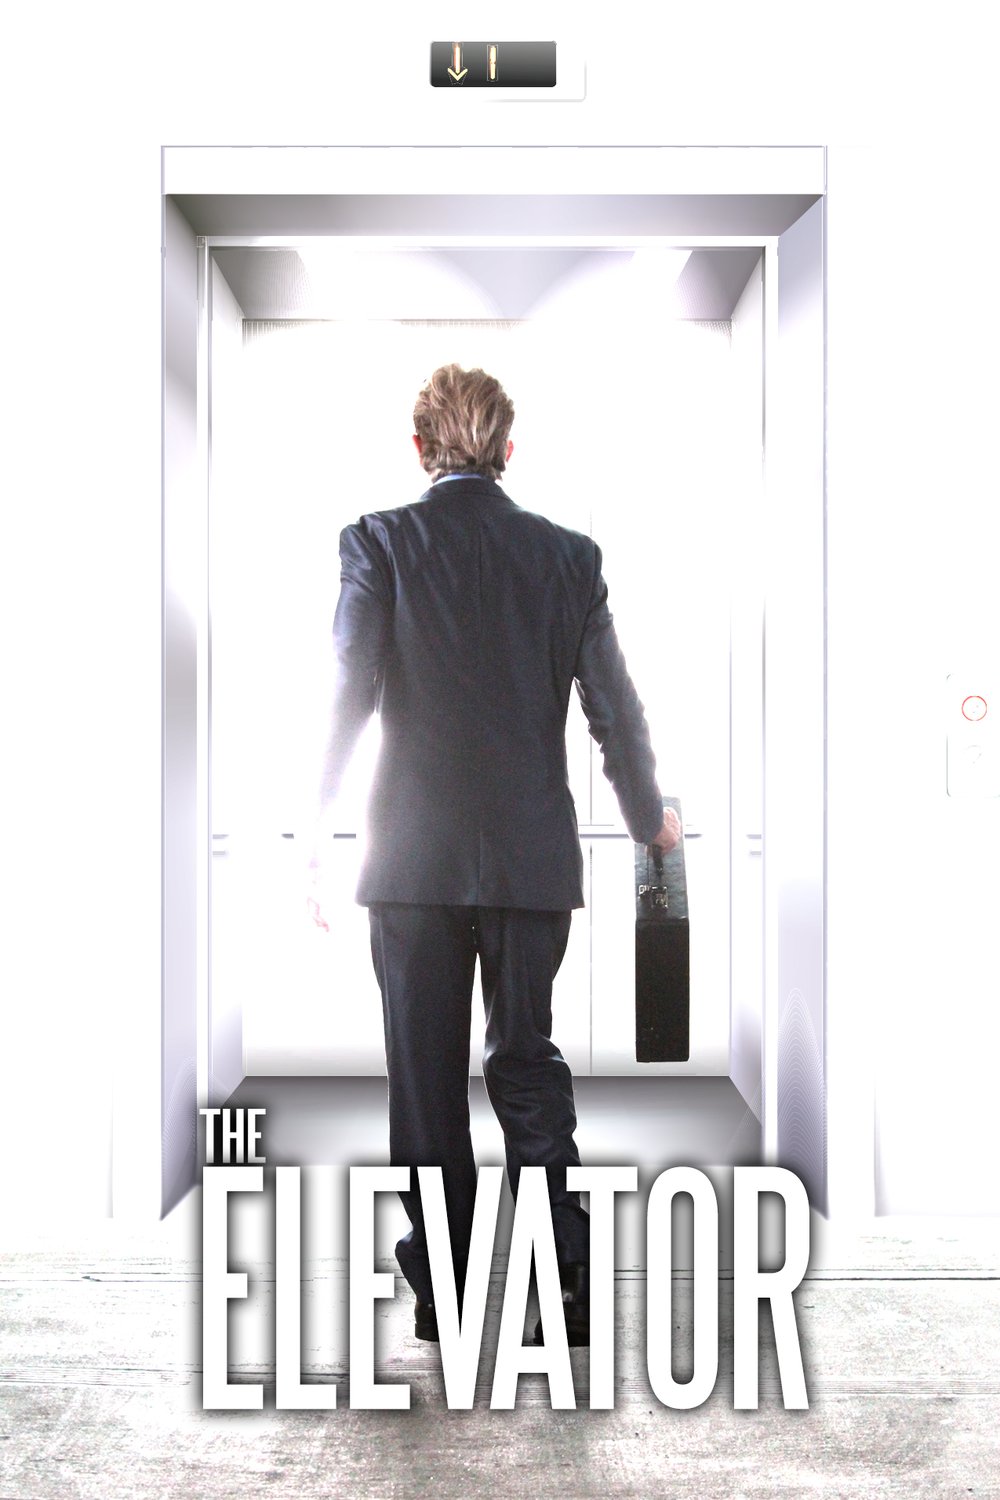 L'affiche du film The Elevator